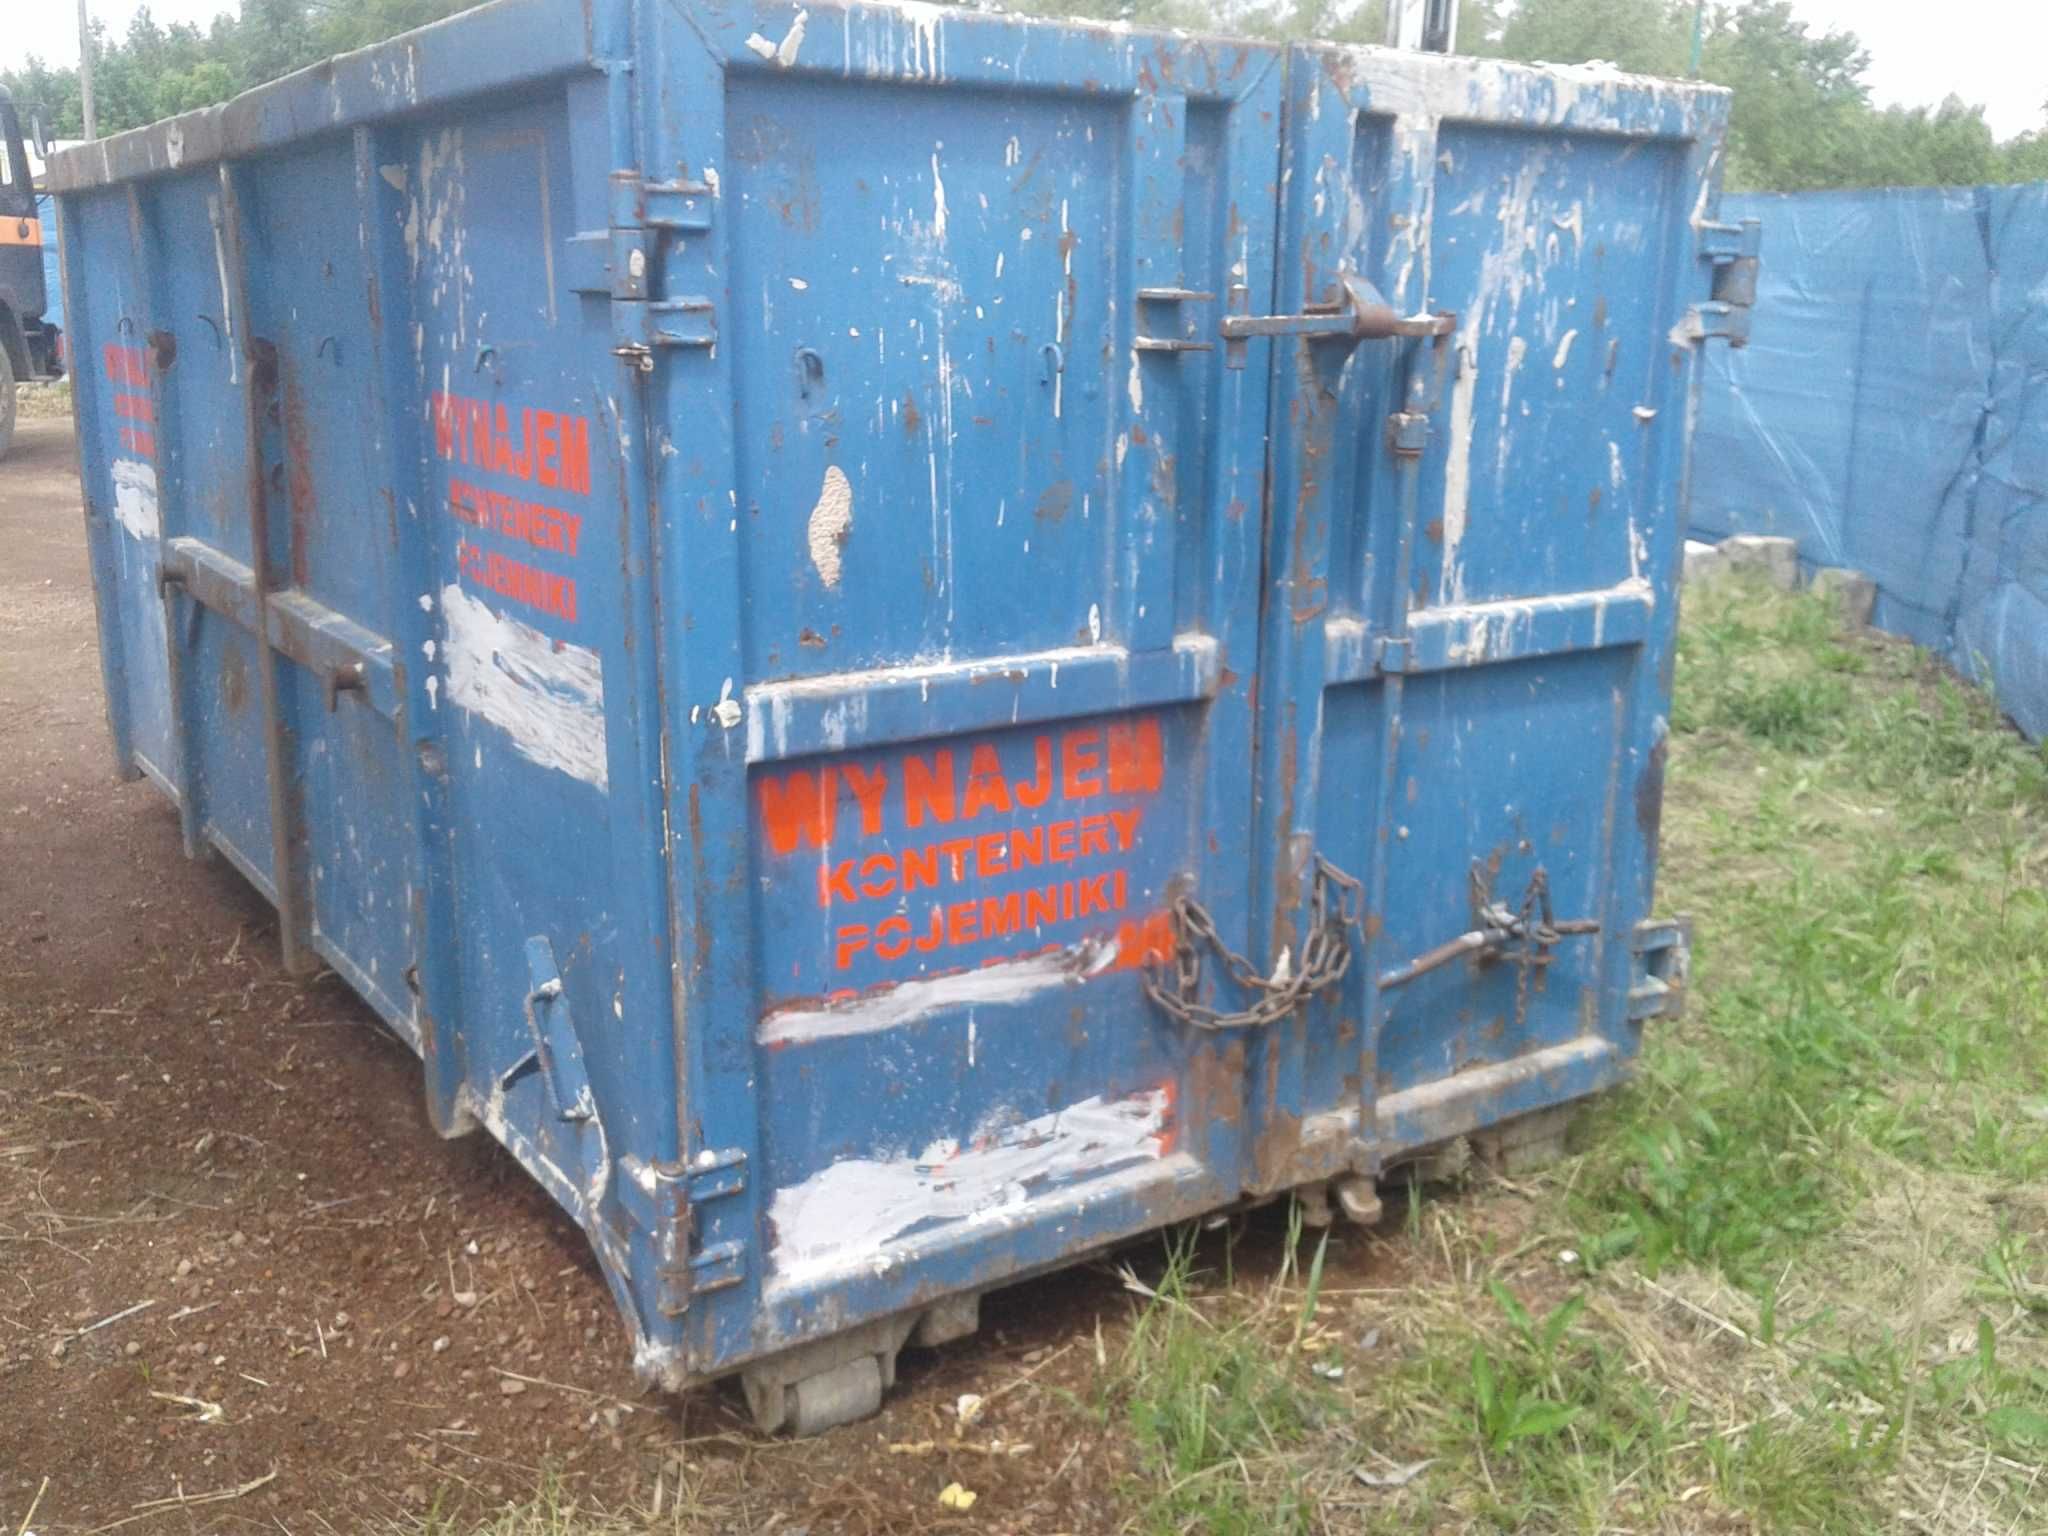 kontener na gruz wywóz gruzu śmieci koleba kontenery wywrotki wanny